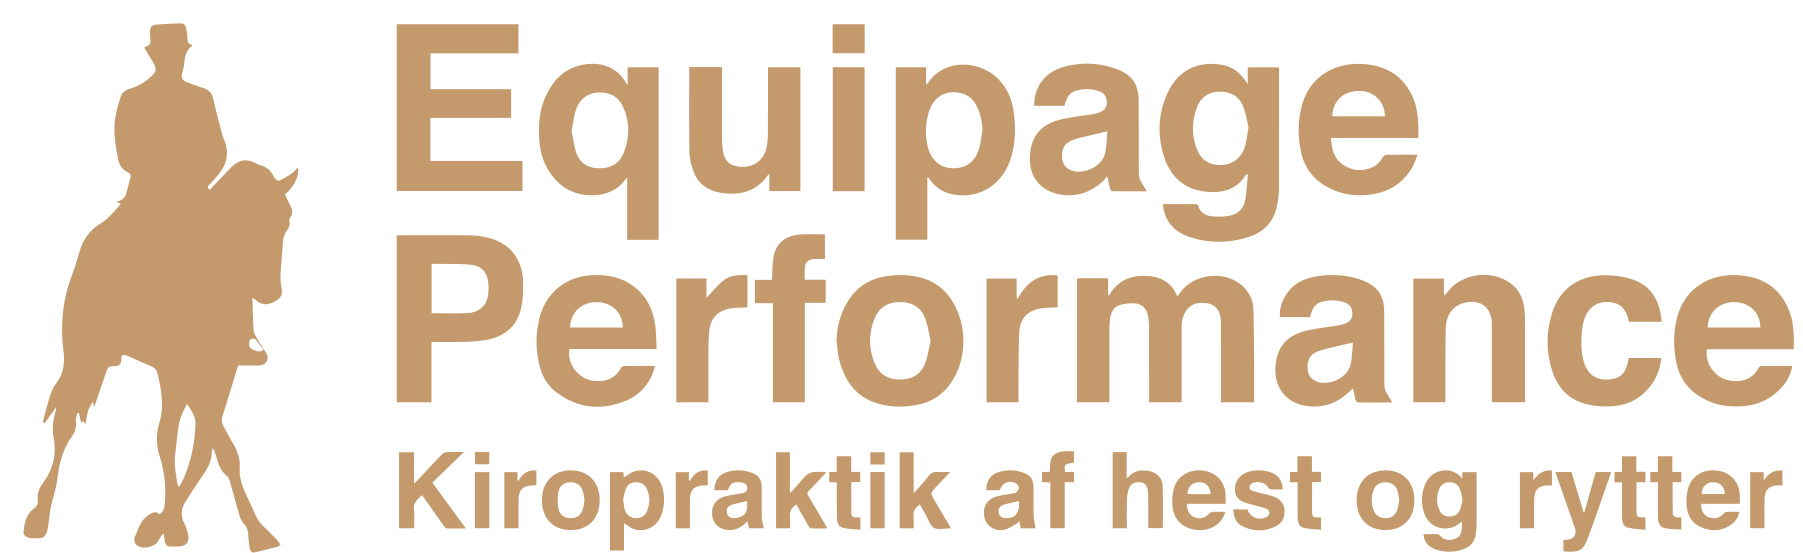 Equipage Performance - Kiropraktik af hest og rytter